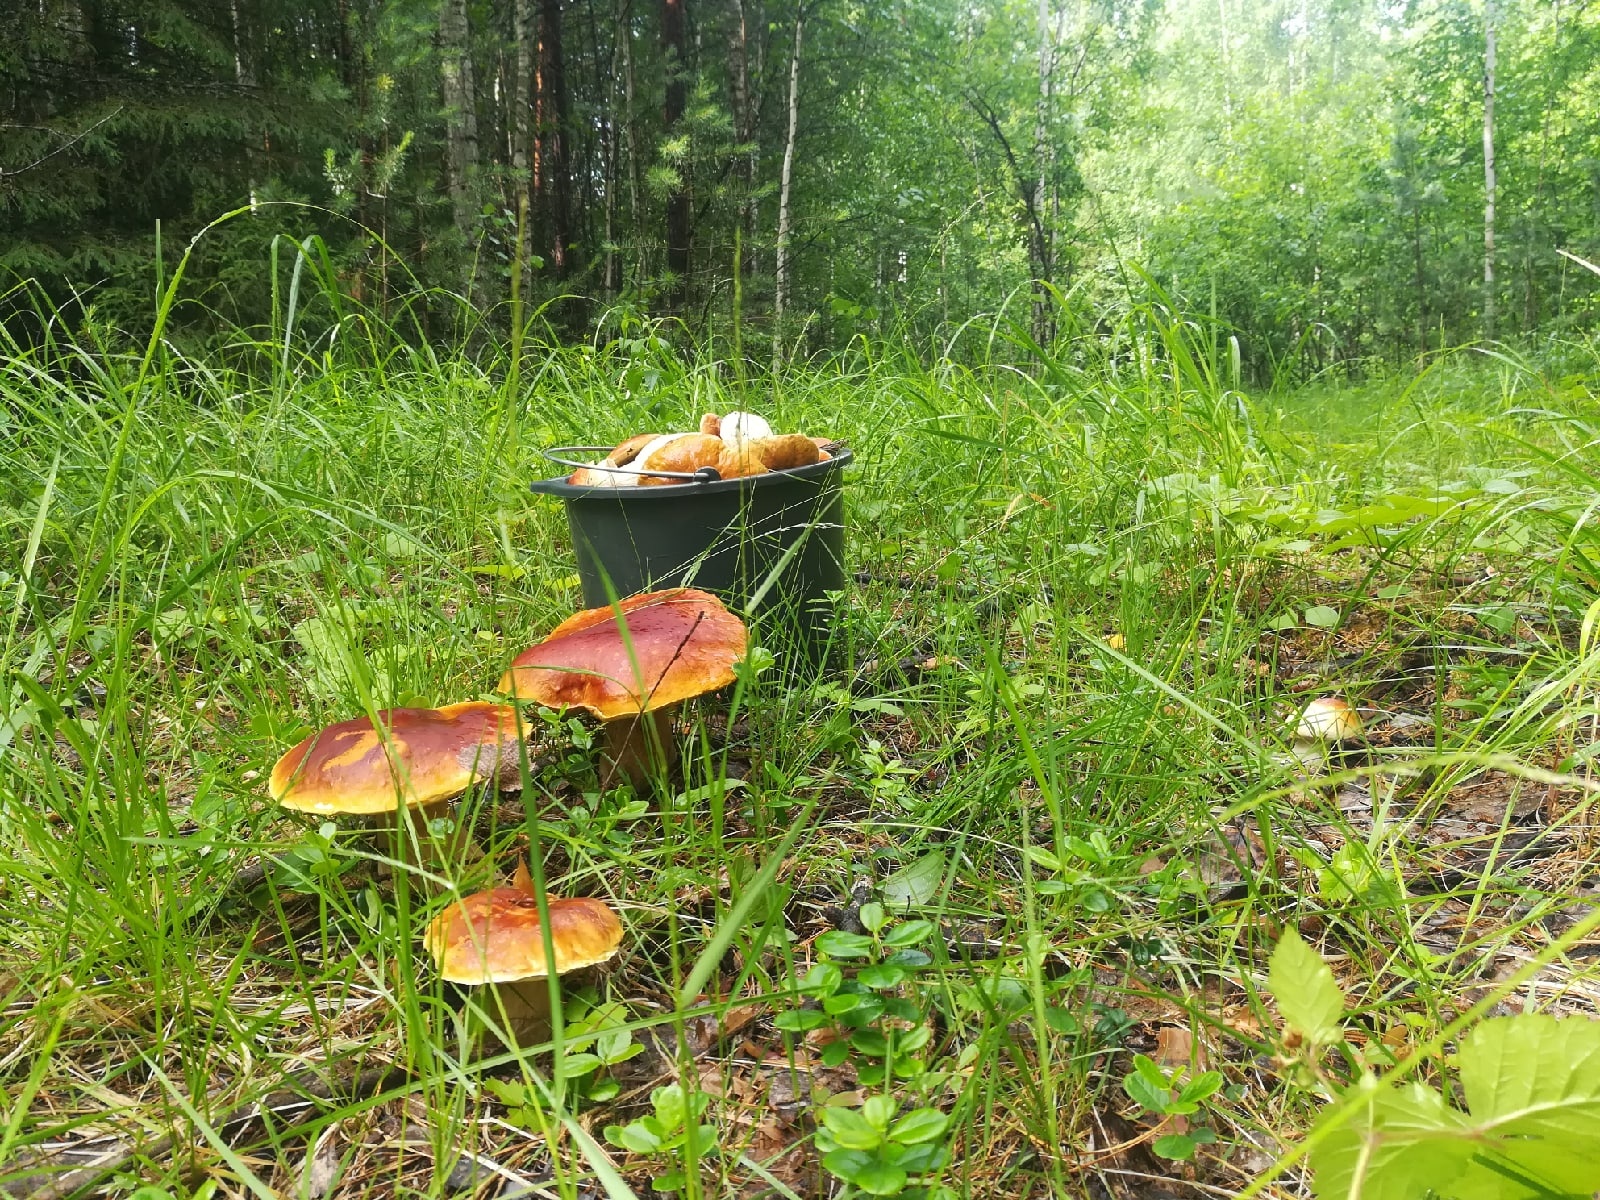 А вы уже бывали в этом году в лесу? Удалось набрать грибов?